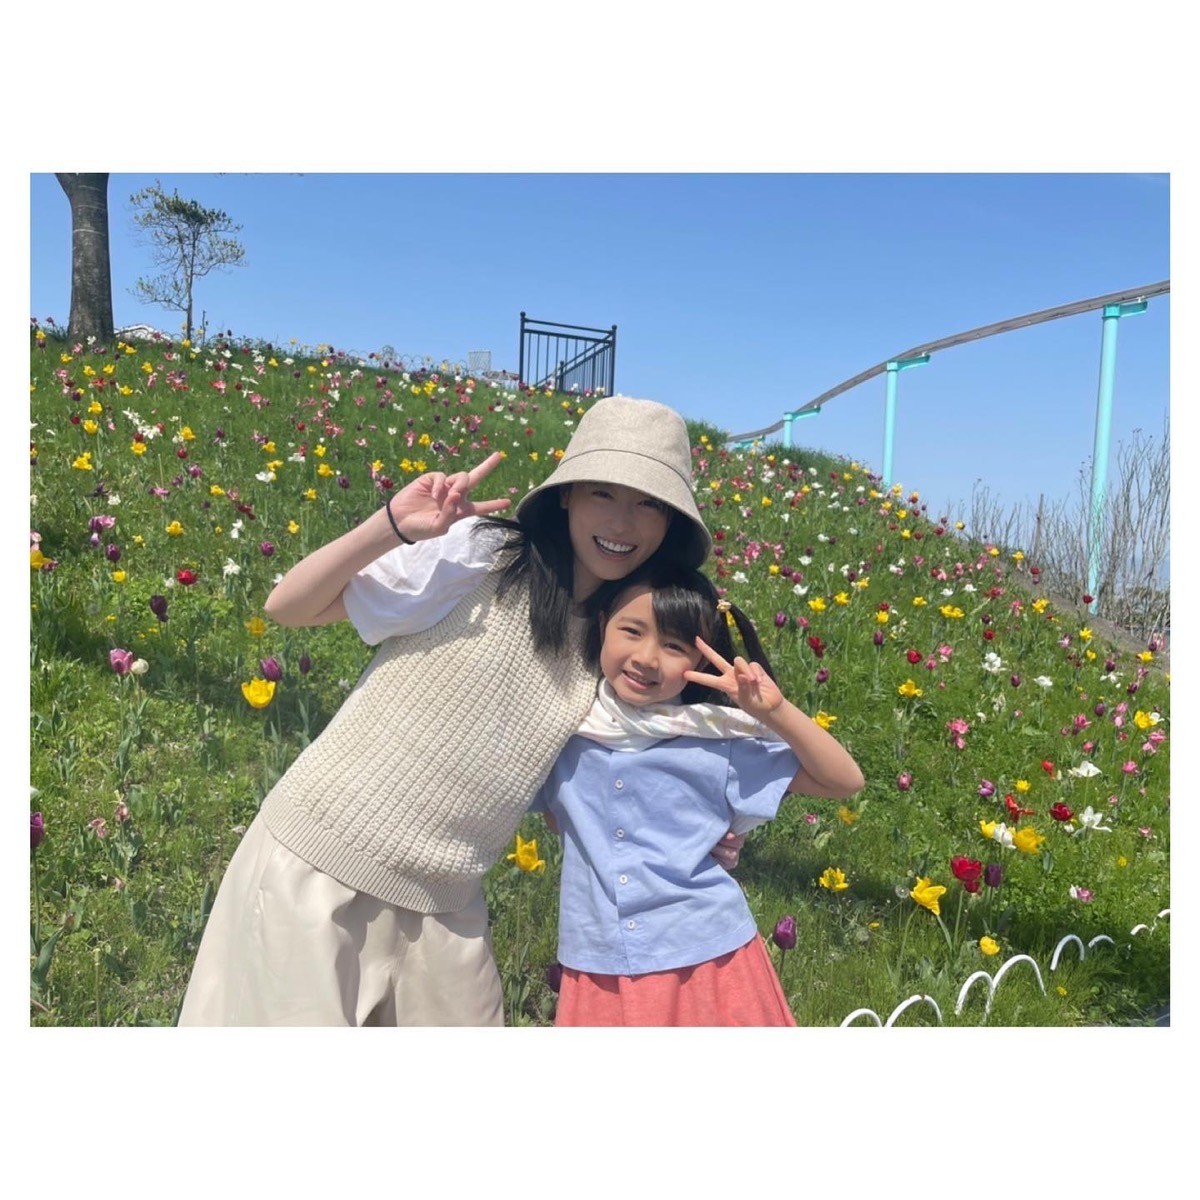 『舞いあがれ！』福原遥、子役・浅田芭路とのお気に入り写真に反響「姉妹みたい」「舞ちゃんが二人」